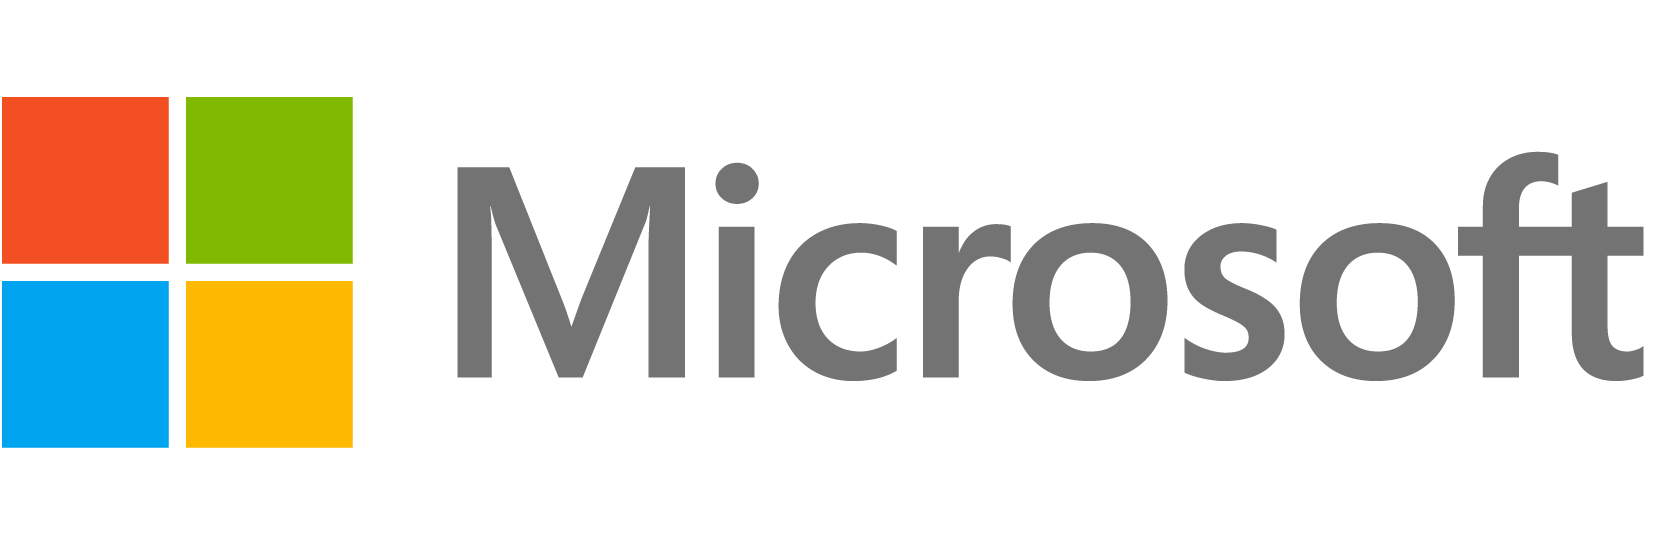 Microsof primary logo